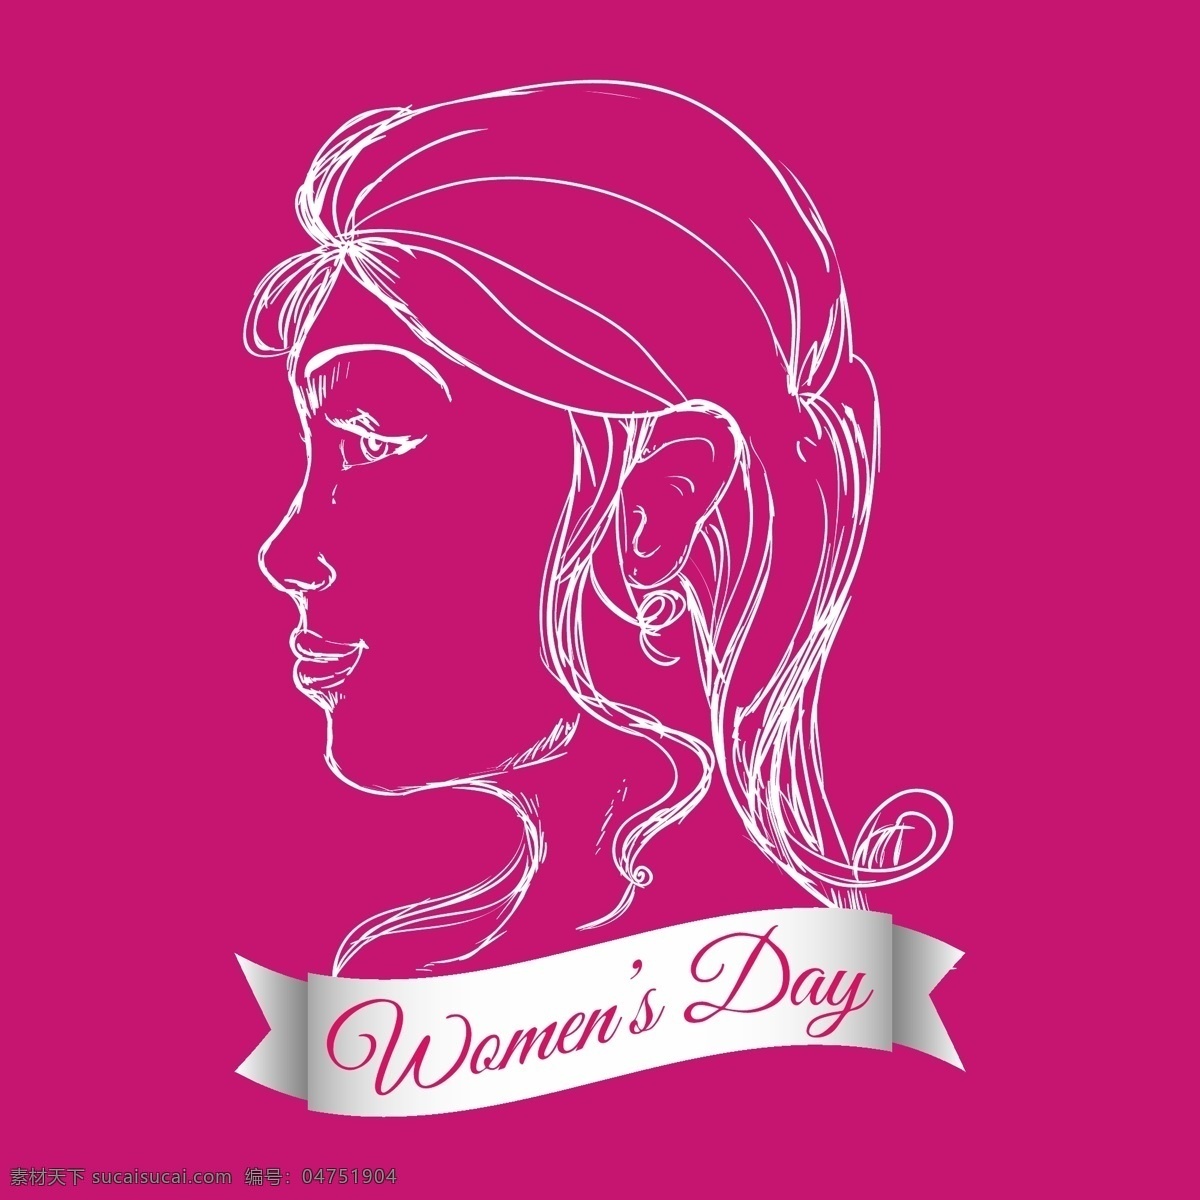 38妇女节 创意设计 贺卡 女性头像 素描 卡片 礼物 女人节 女性节日 妇女节 节日庆祝 矢量 文化艺术